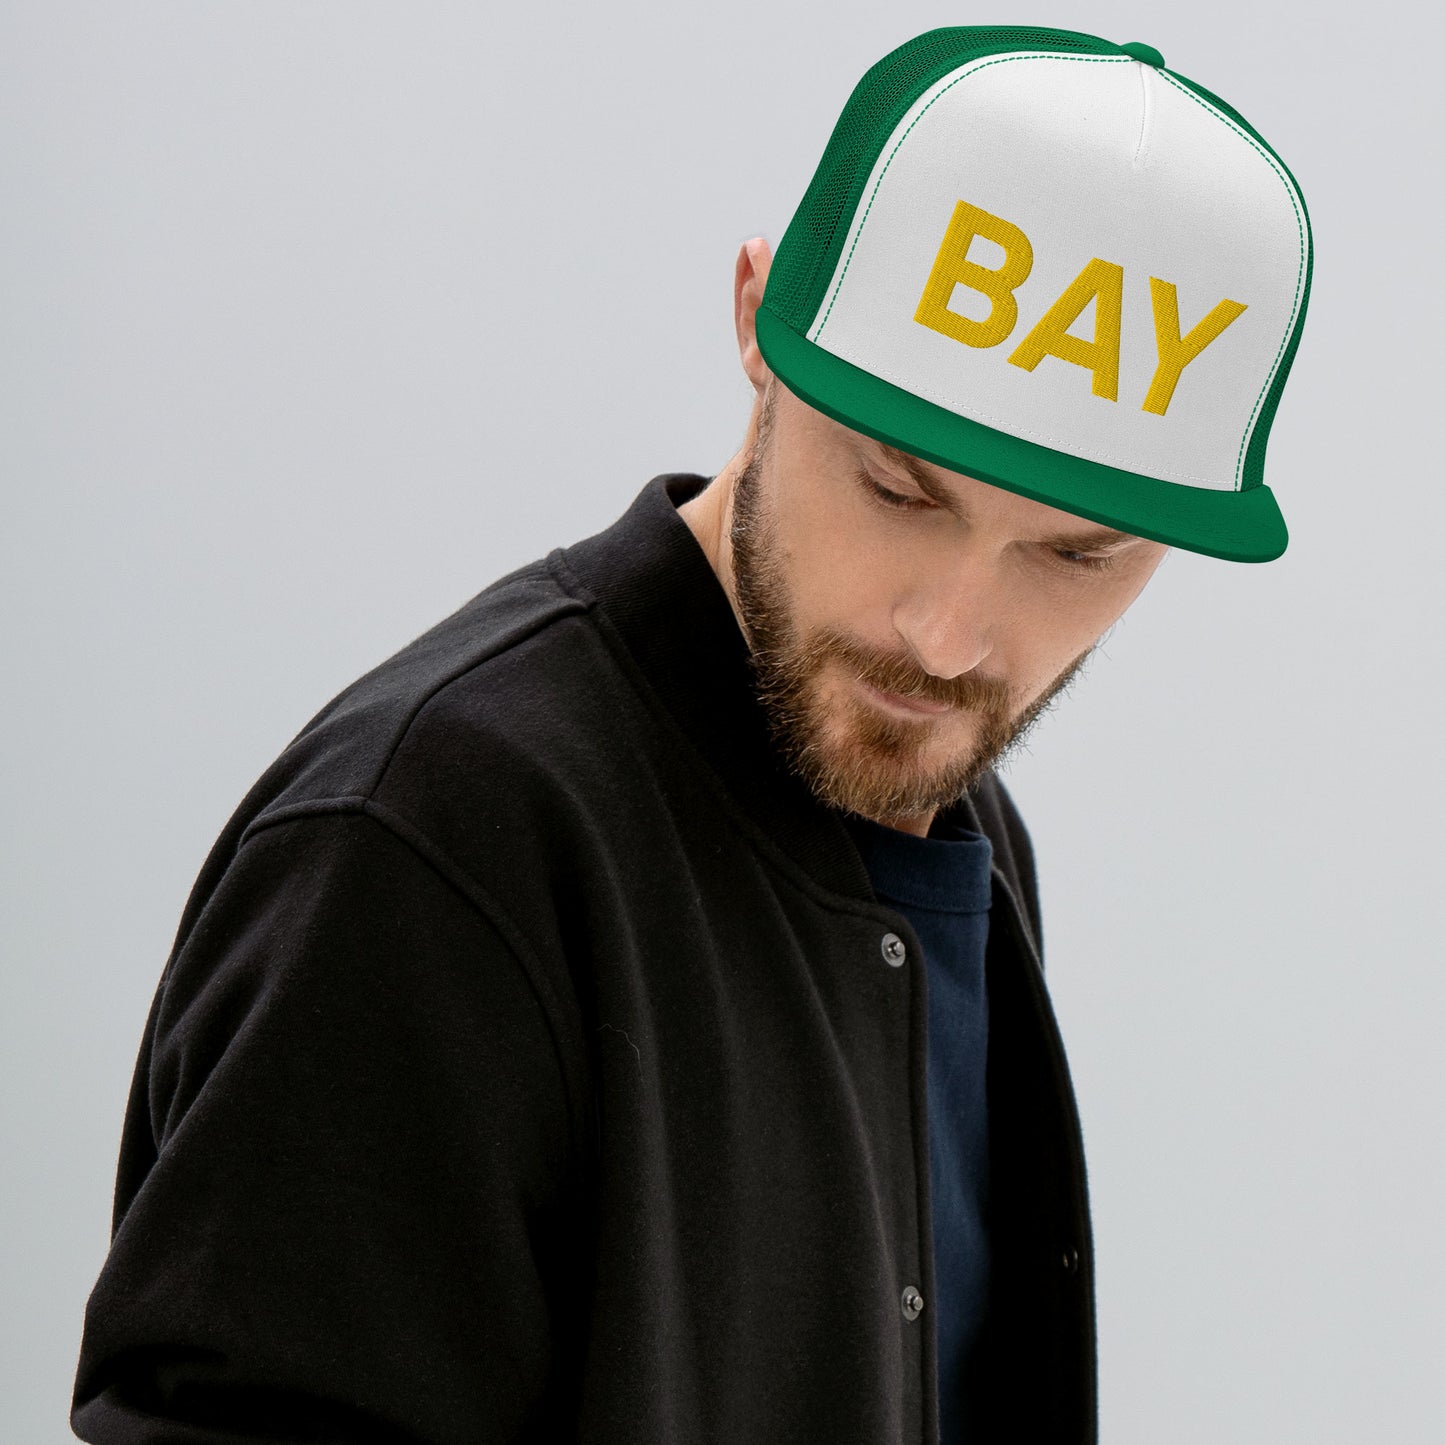 BAY Green Bay Faithful Trucker Hat